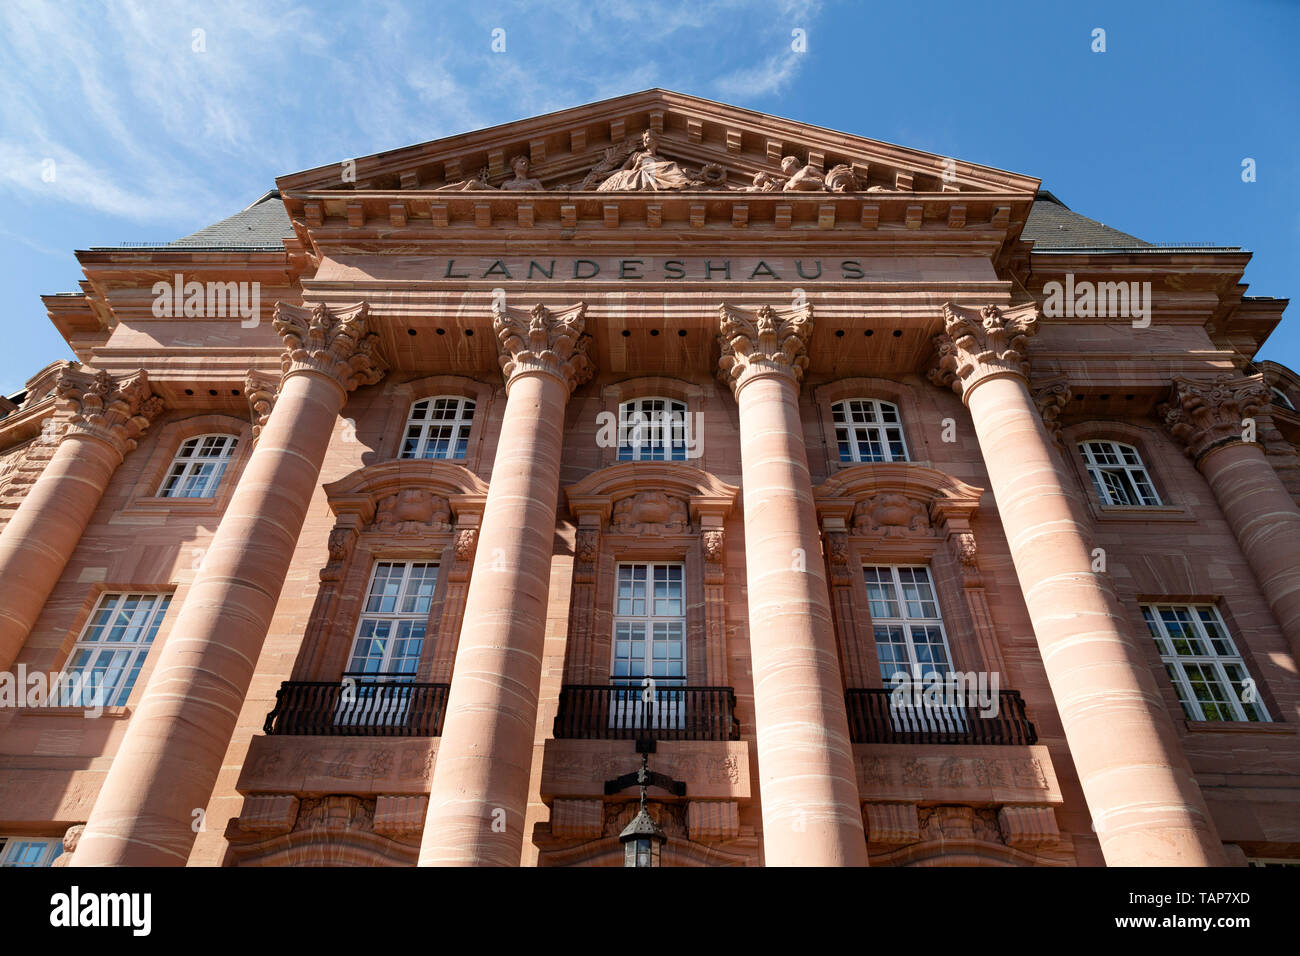 La Landeshaus en Wiesbaden, la capital del estado de Hesse, Alemania. Foto de stock